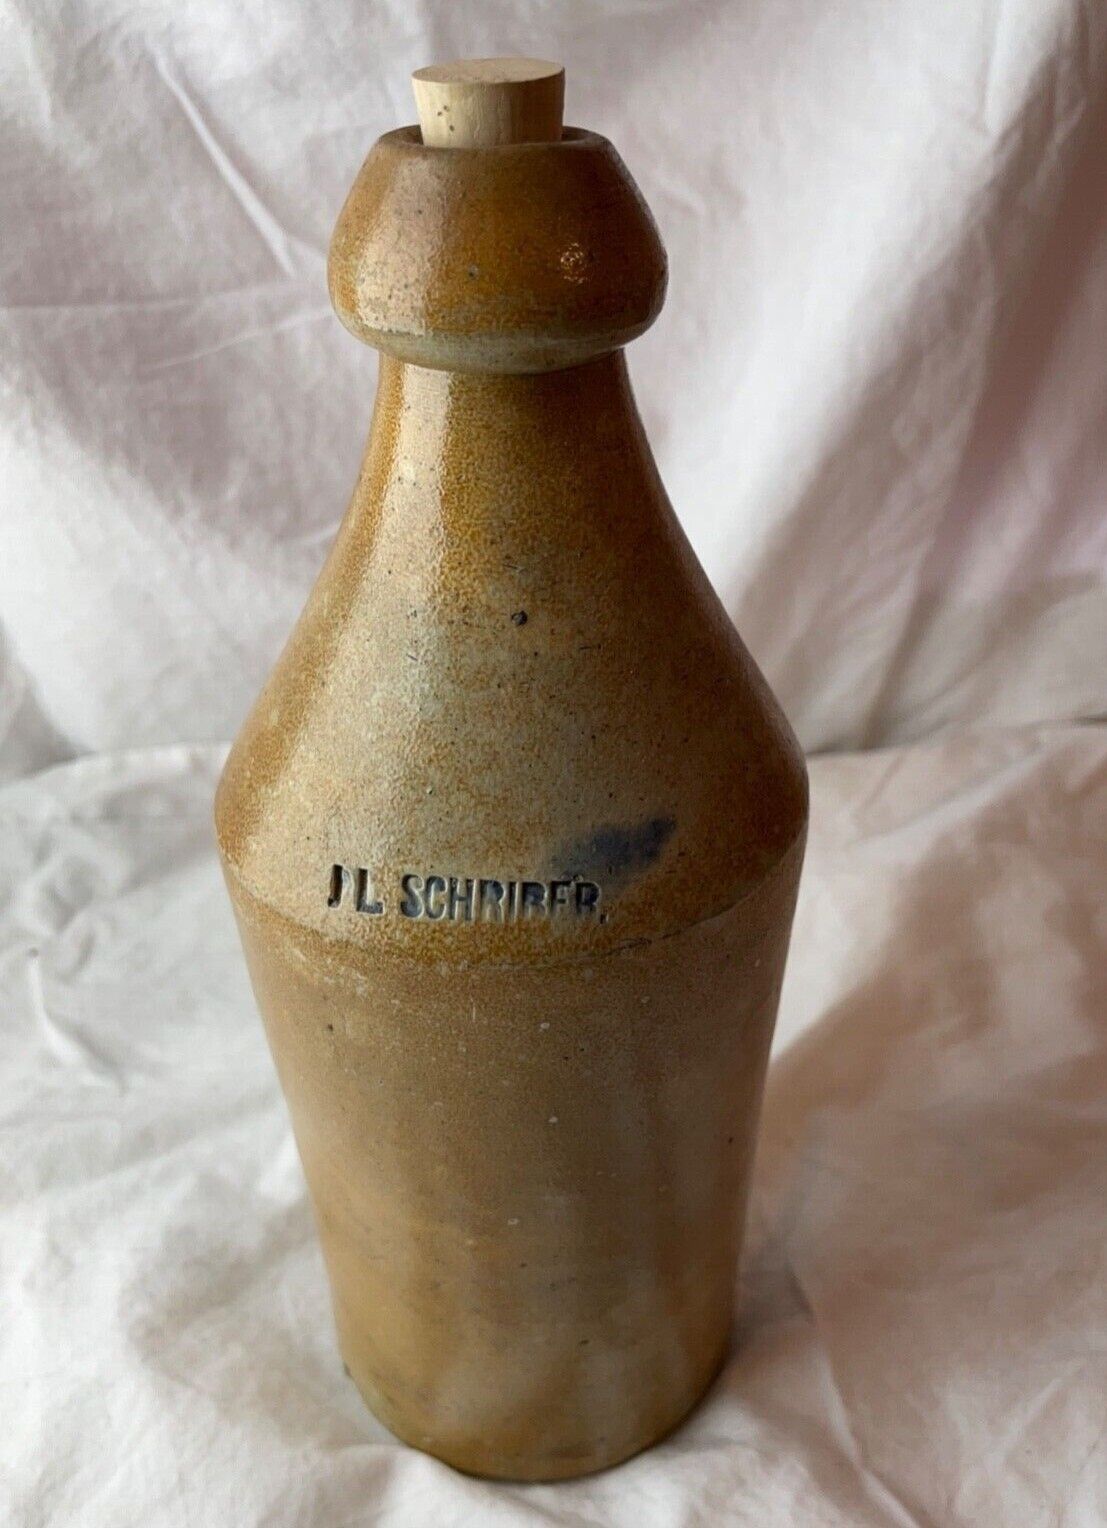 Civil war era bottle JL SCHRIBER Salt-Glazed Stoneware American beer whiskey